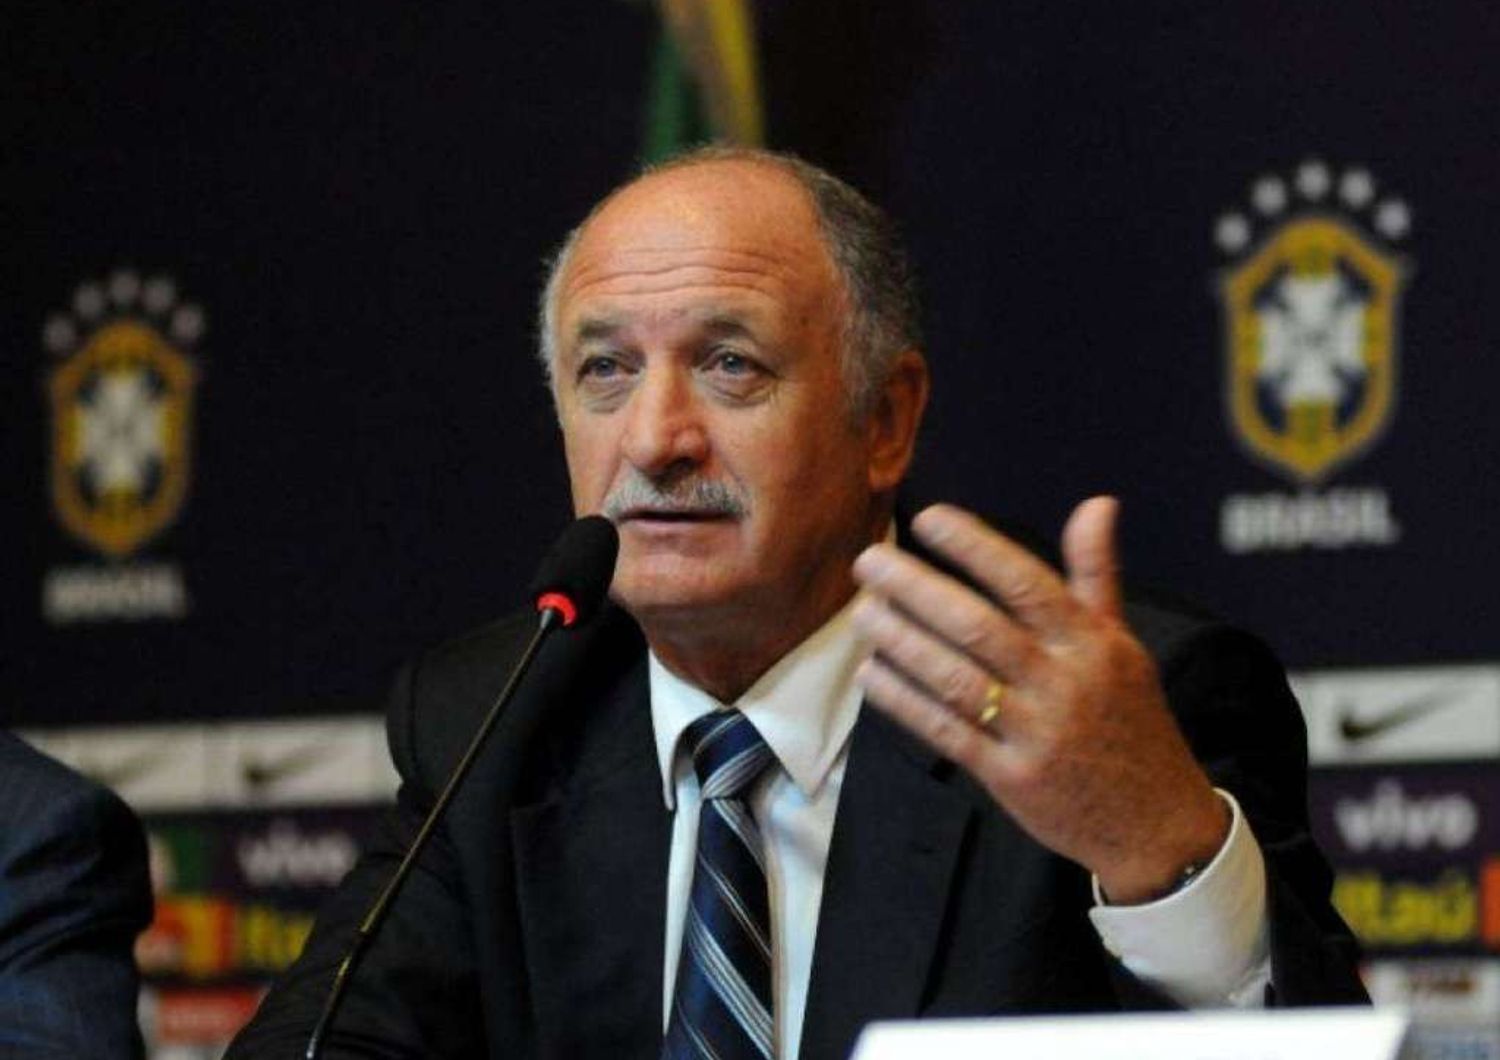 Mondiali: Brasile, la Federcalcio accoglie dimissioni di Scolari